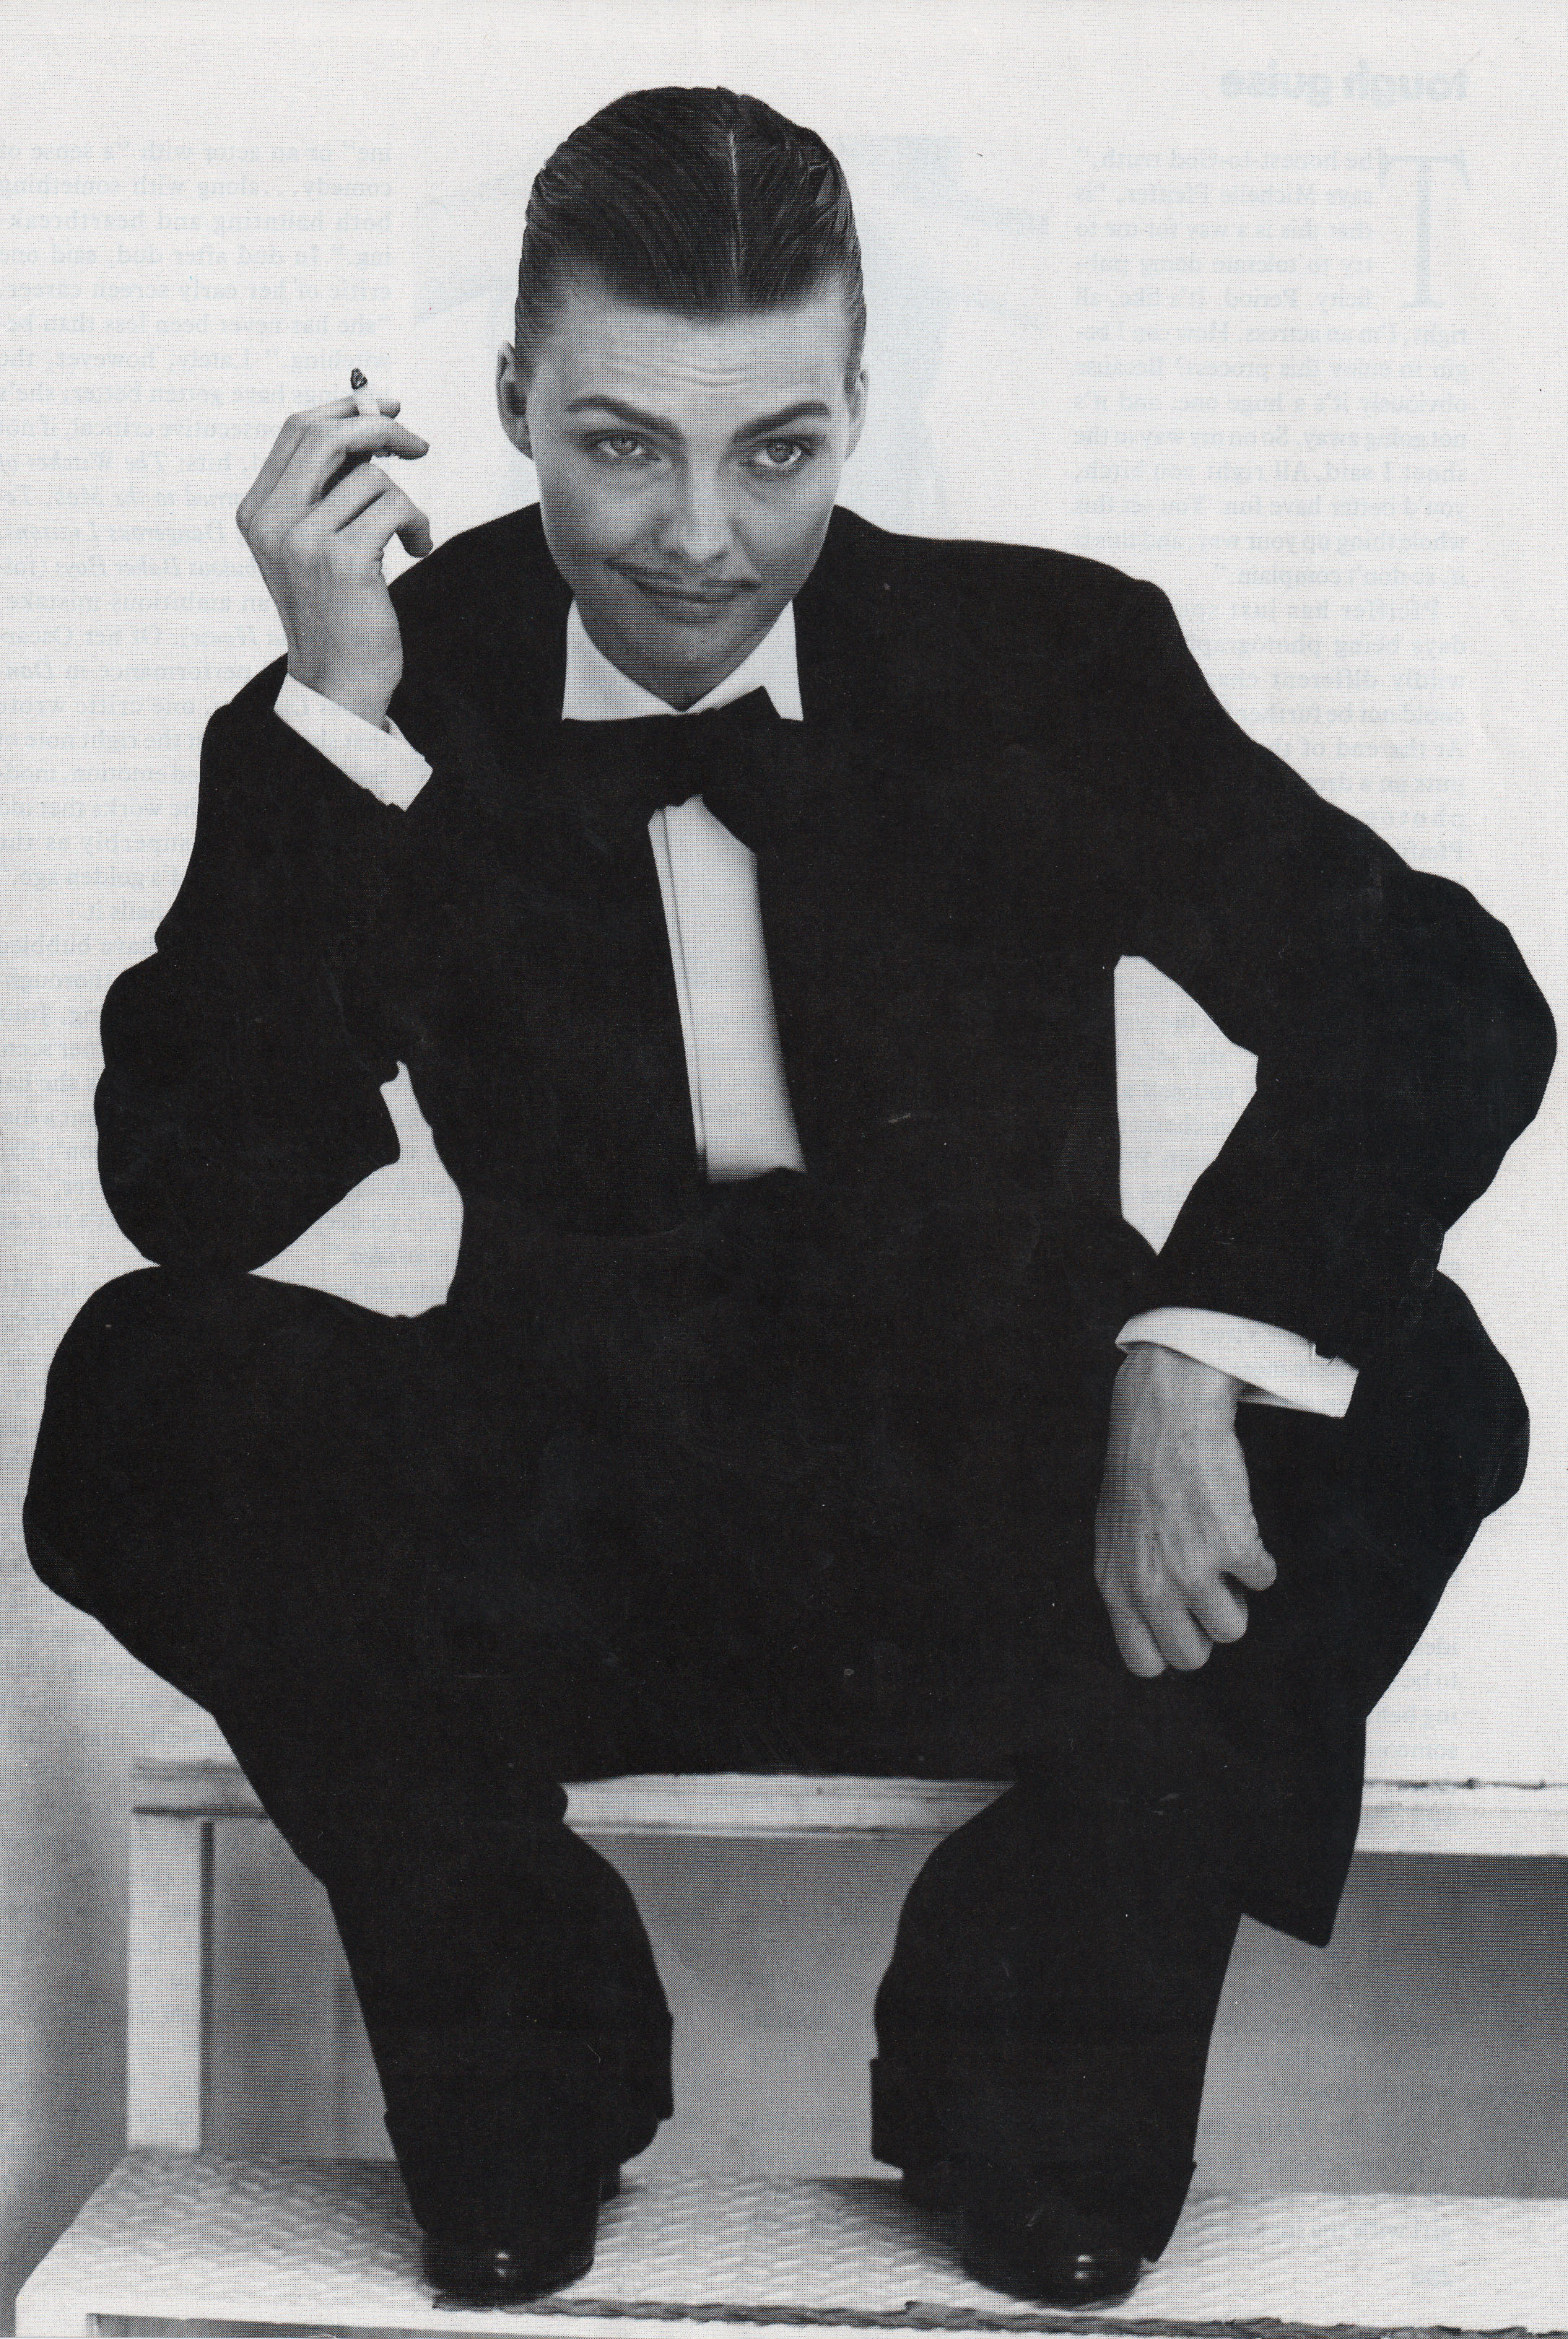 Мишель Пфайффер в образе Лоуренса из пьесы британского драматурга Ноэла Коуарда «Частные жизни»/ Vogue, 1991 год